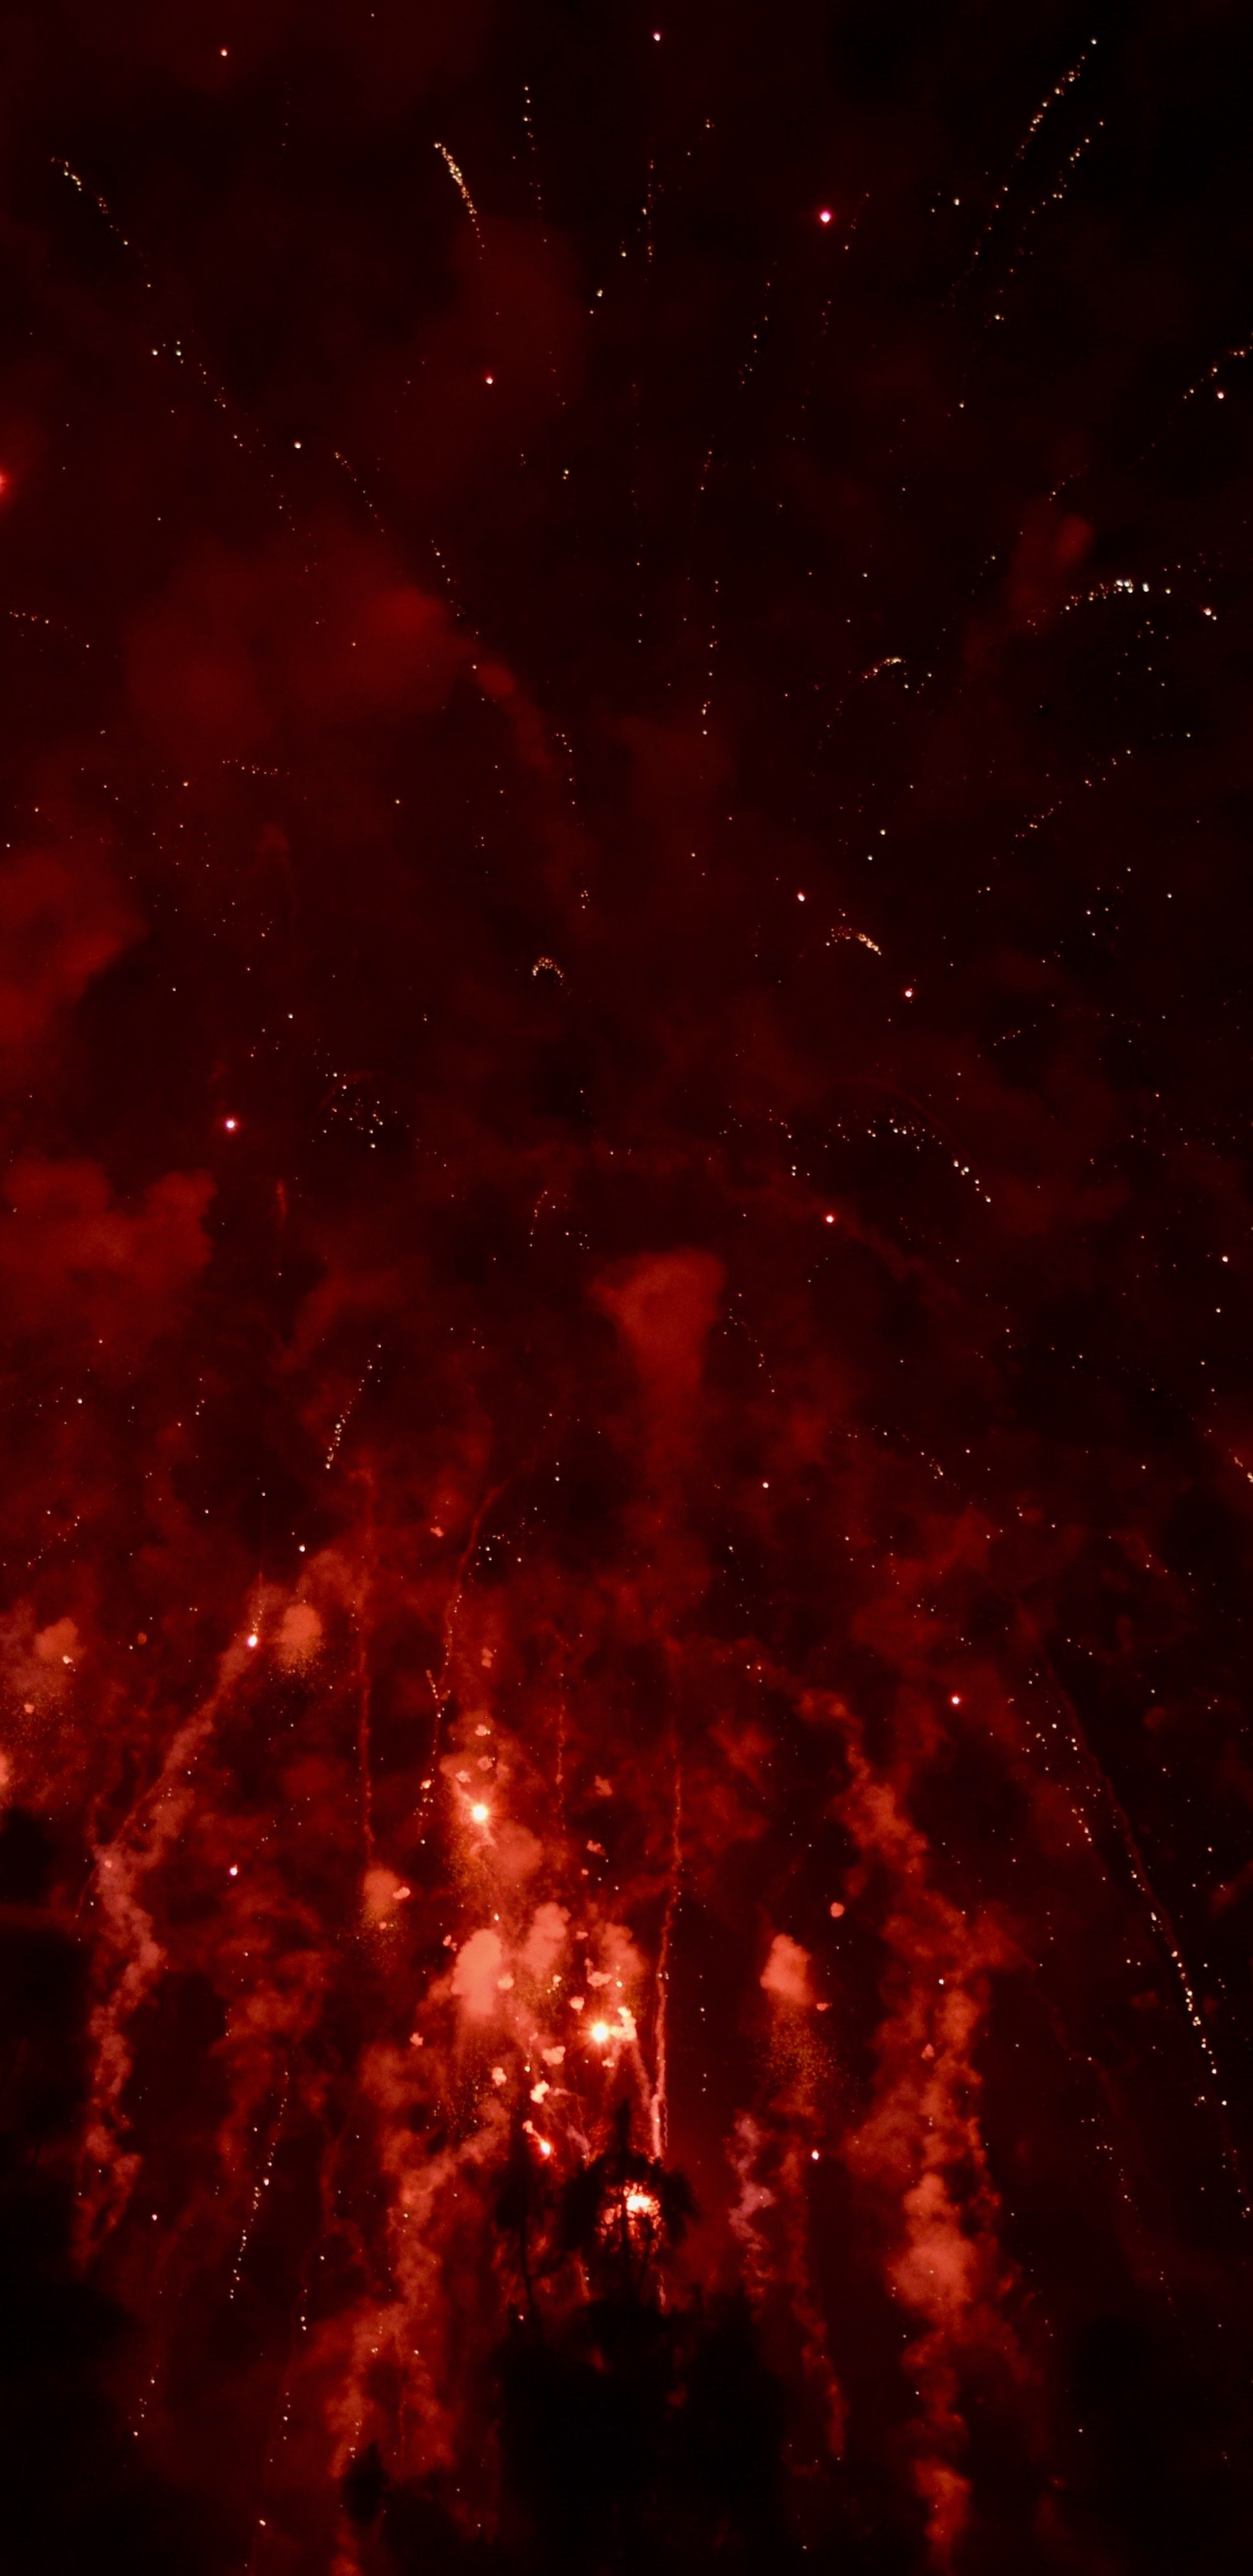 Download 1440x2960 Wallpaper Fireworks Red Dark Samsung Galaxy